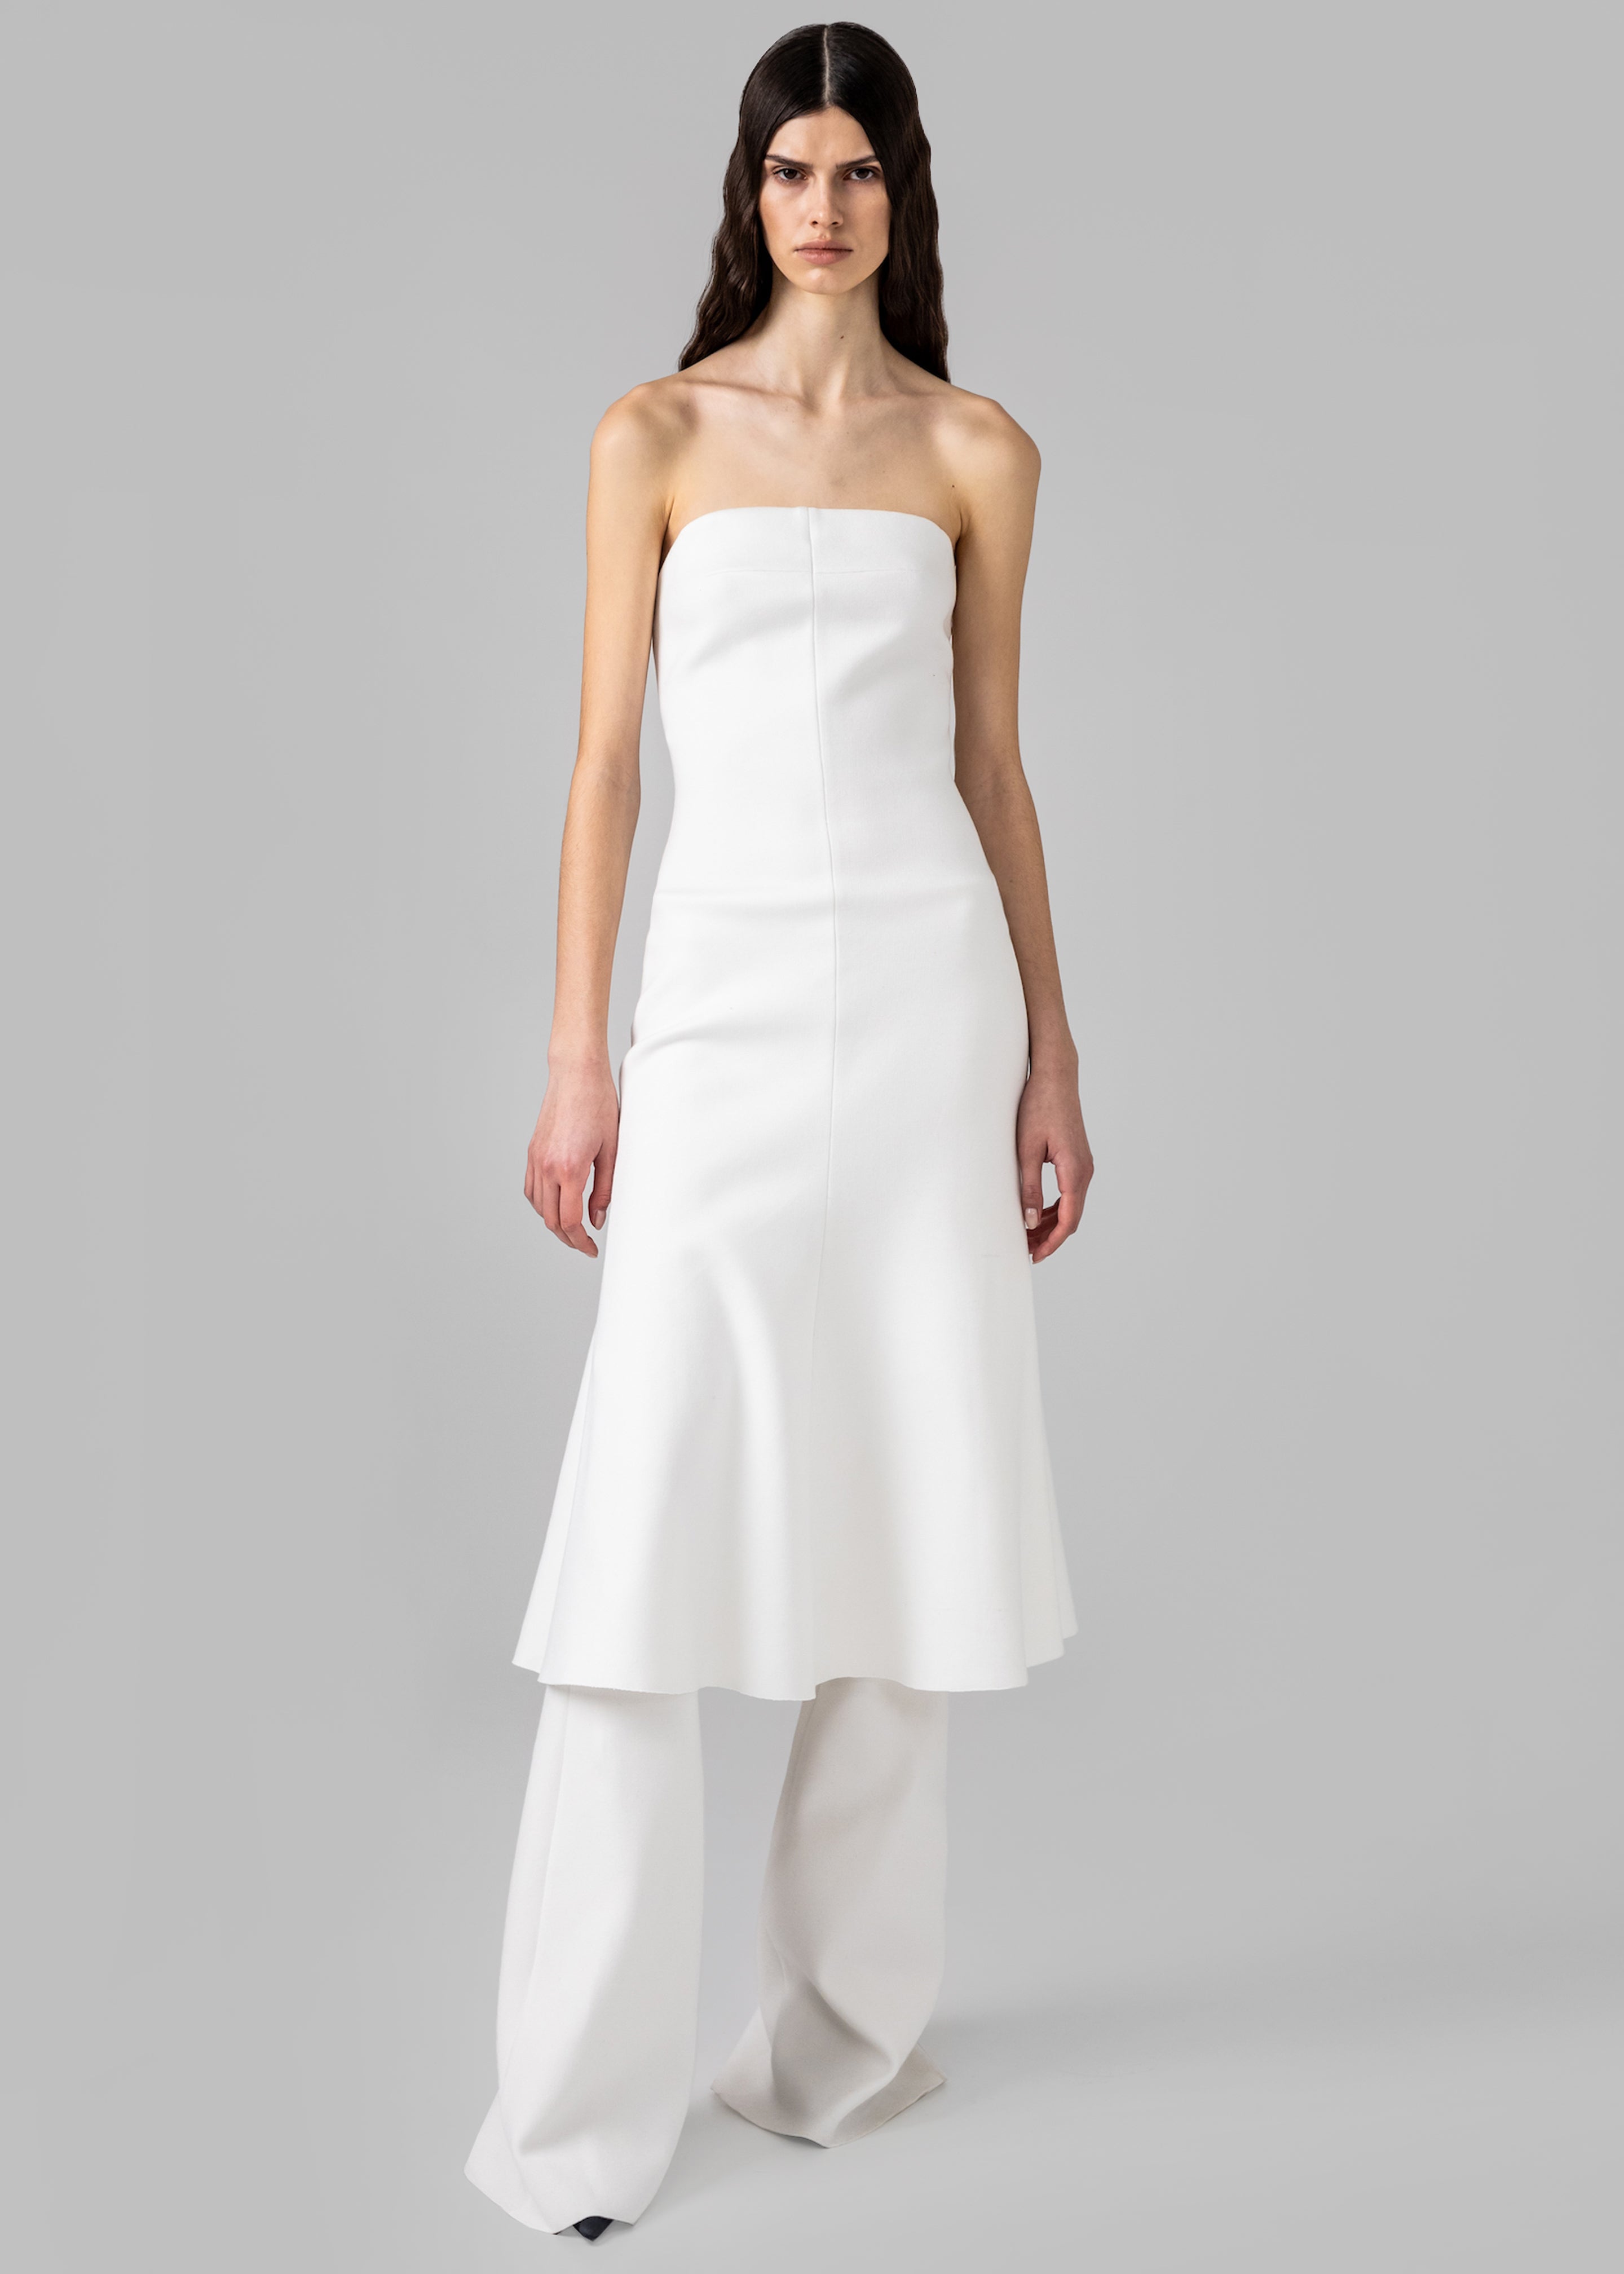 Gudu Dress #08 - White - 2